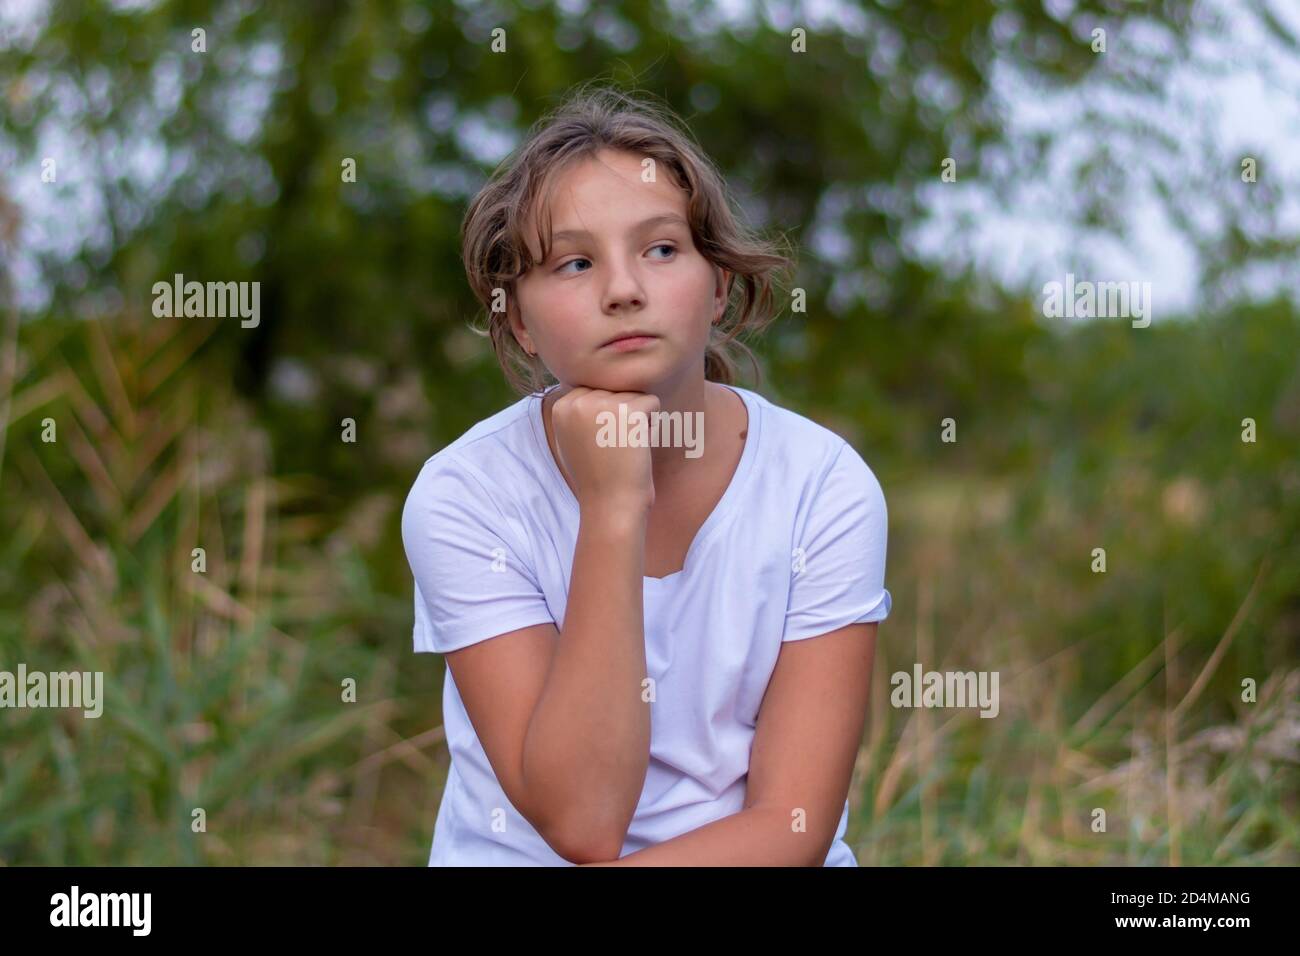 Pensive triste adolescente mira a un lado. Retrato en el parque al aire libre. Emociones, sentimientos concepto. Fondo borroso. Foto de stock